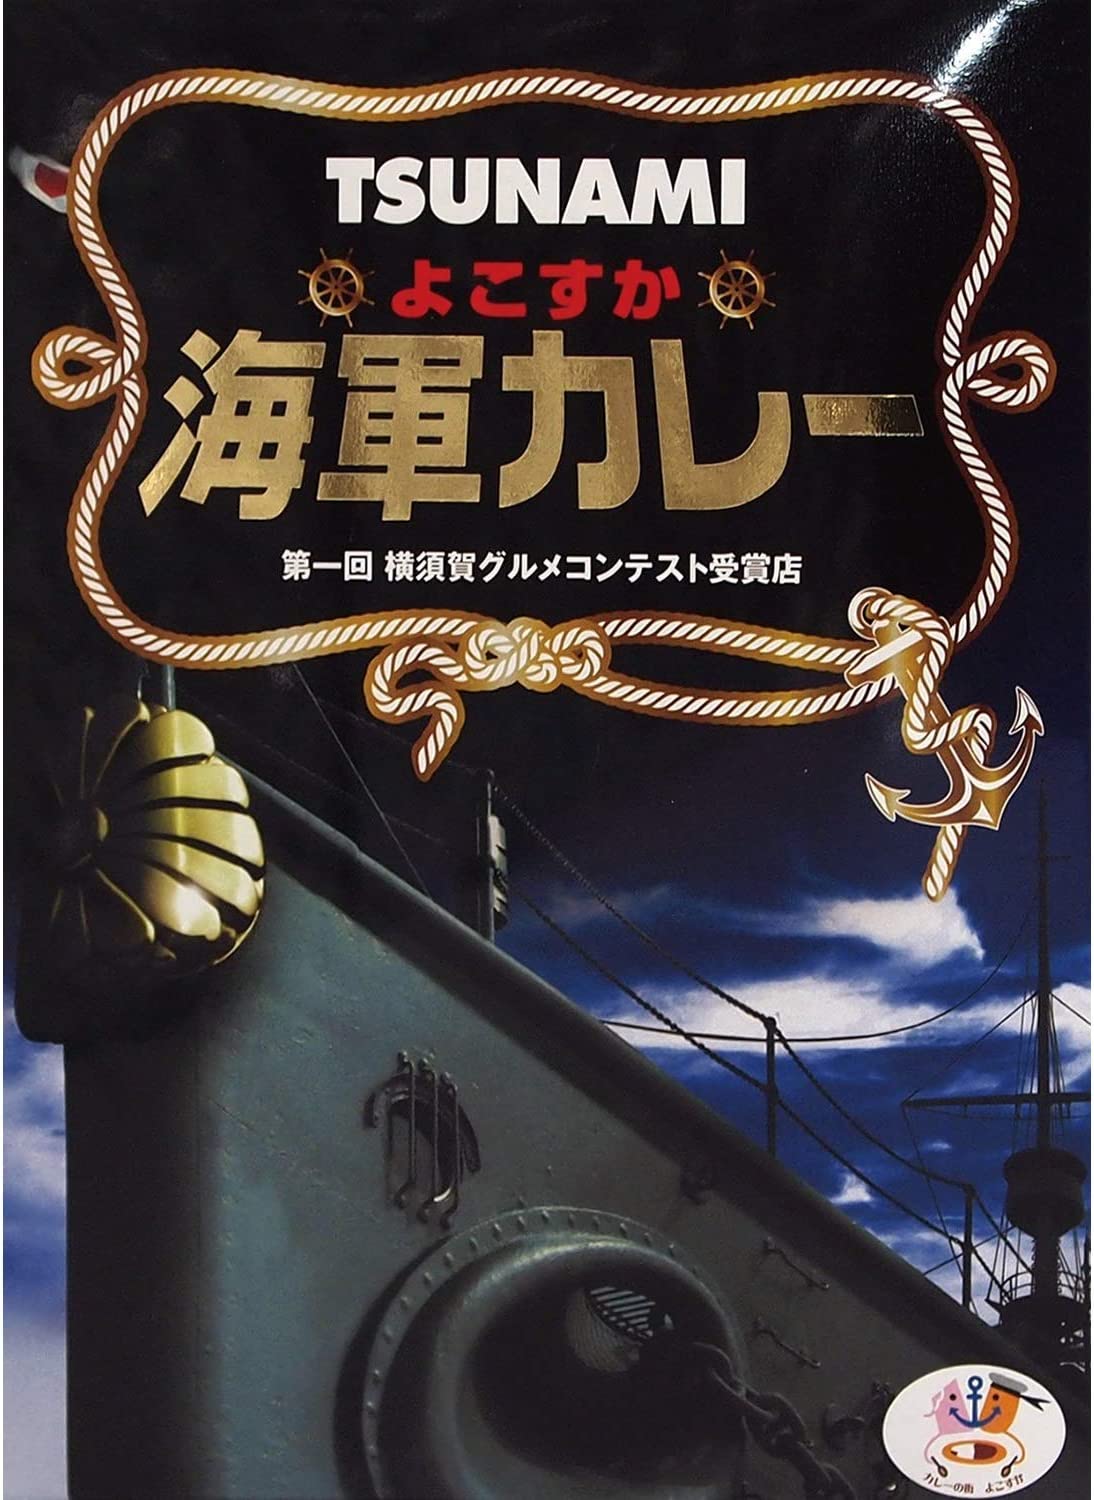 調味商事 TSUNAMI よこすか海軍カレー 200g × 48個 カレー、レトルトカレーの商品画像